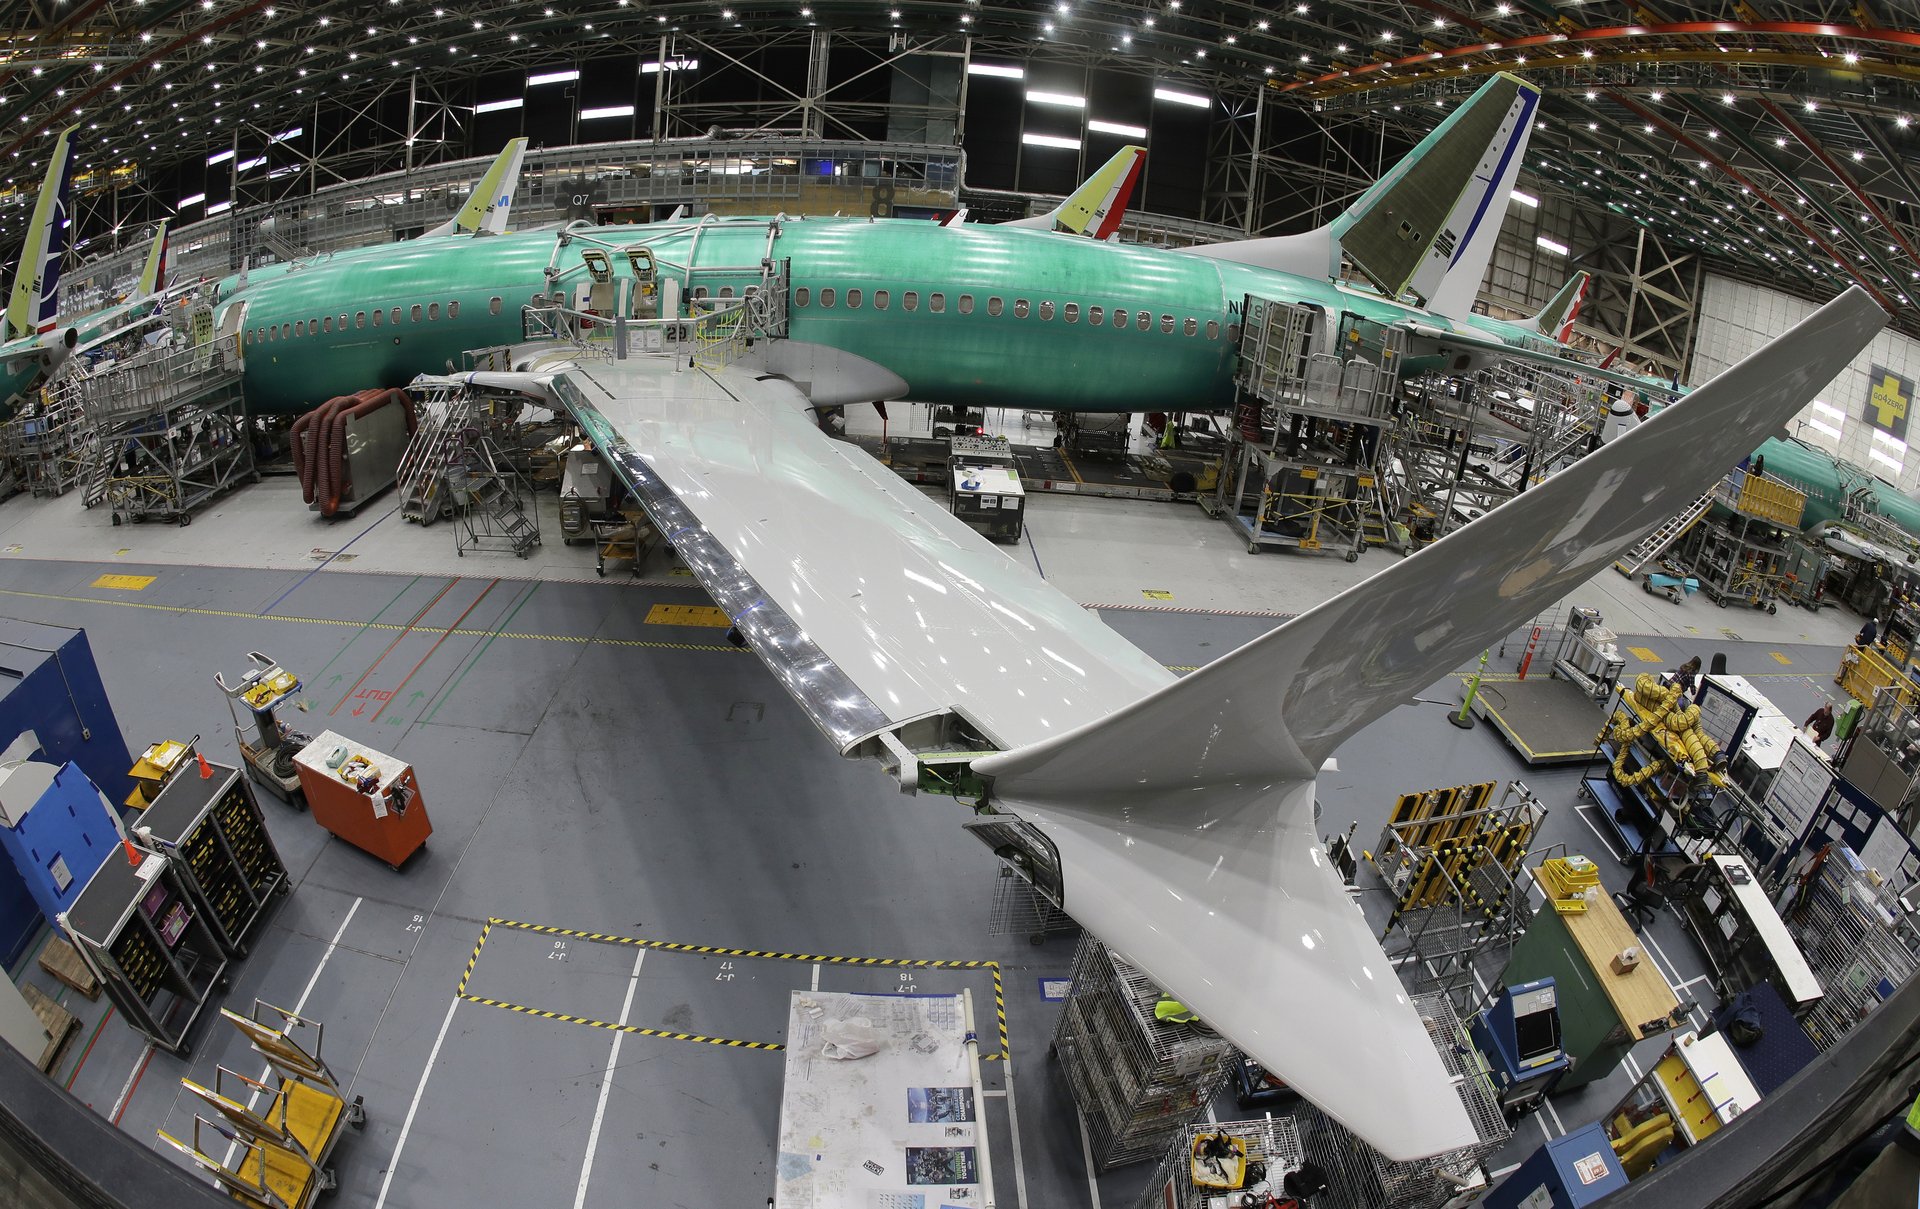 Boeing liên tục gặp sự cố về an toàn trong thời gian gần đây. Ảnh: AP